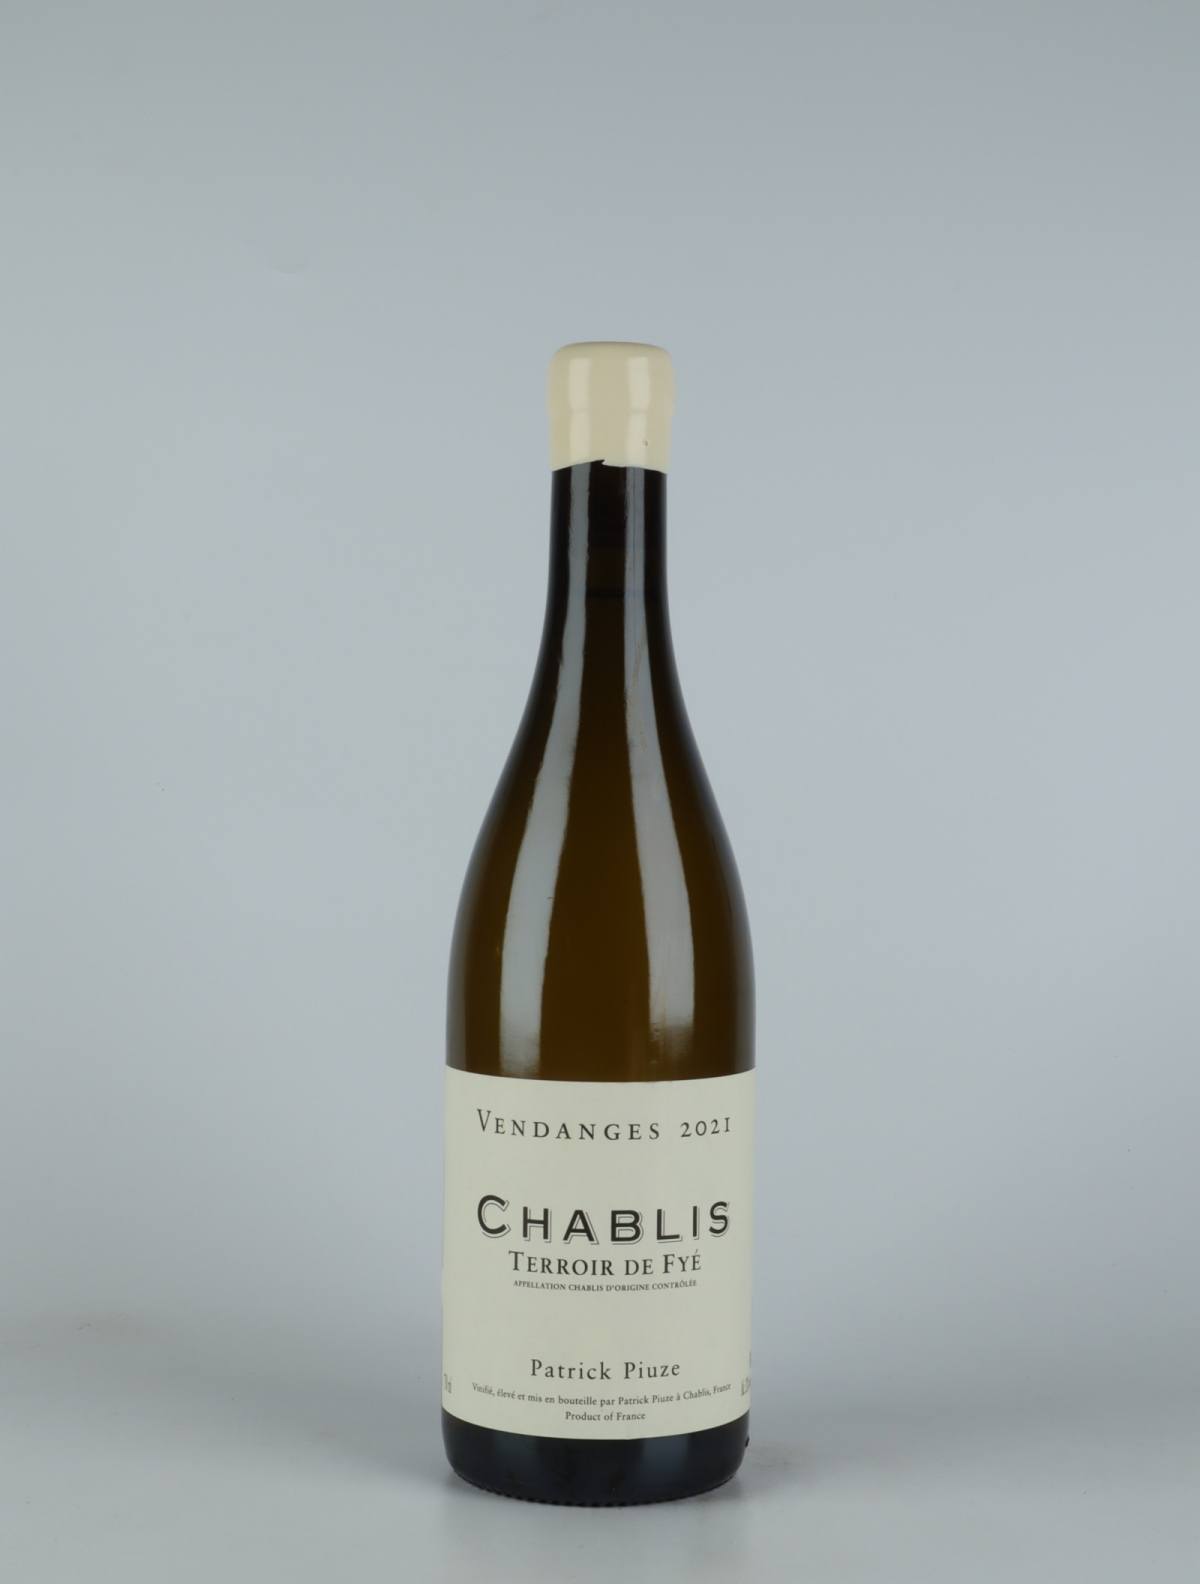 A bottle 2021 Chablis - Terroir de Fyé White wine from Patrick Piuze, Burgundy in France